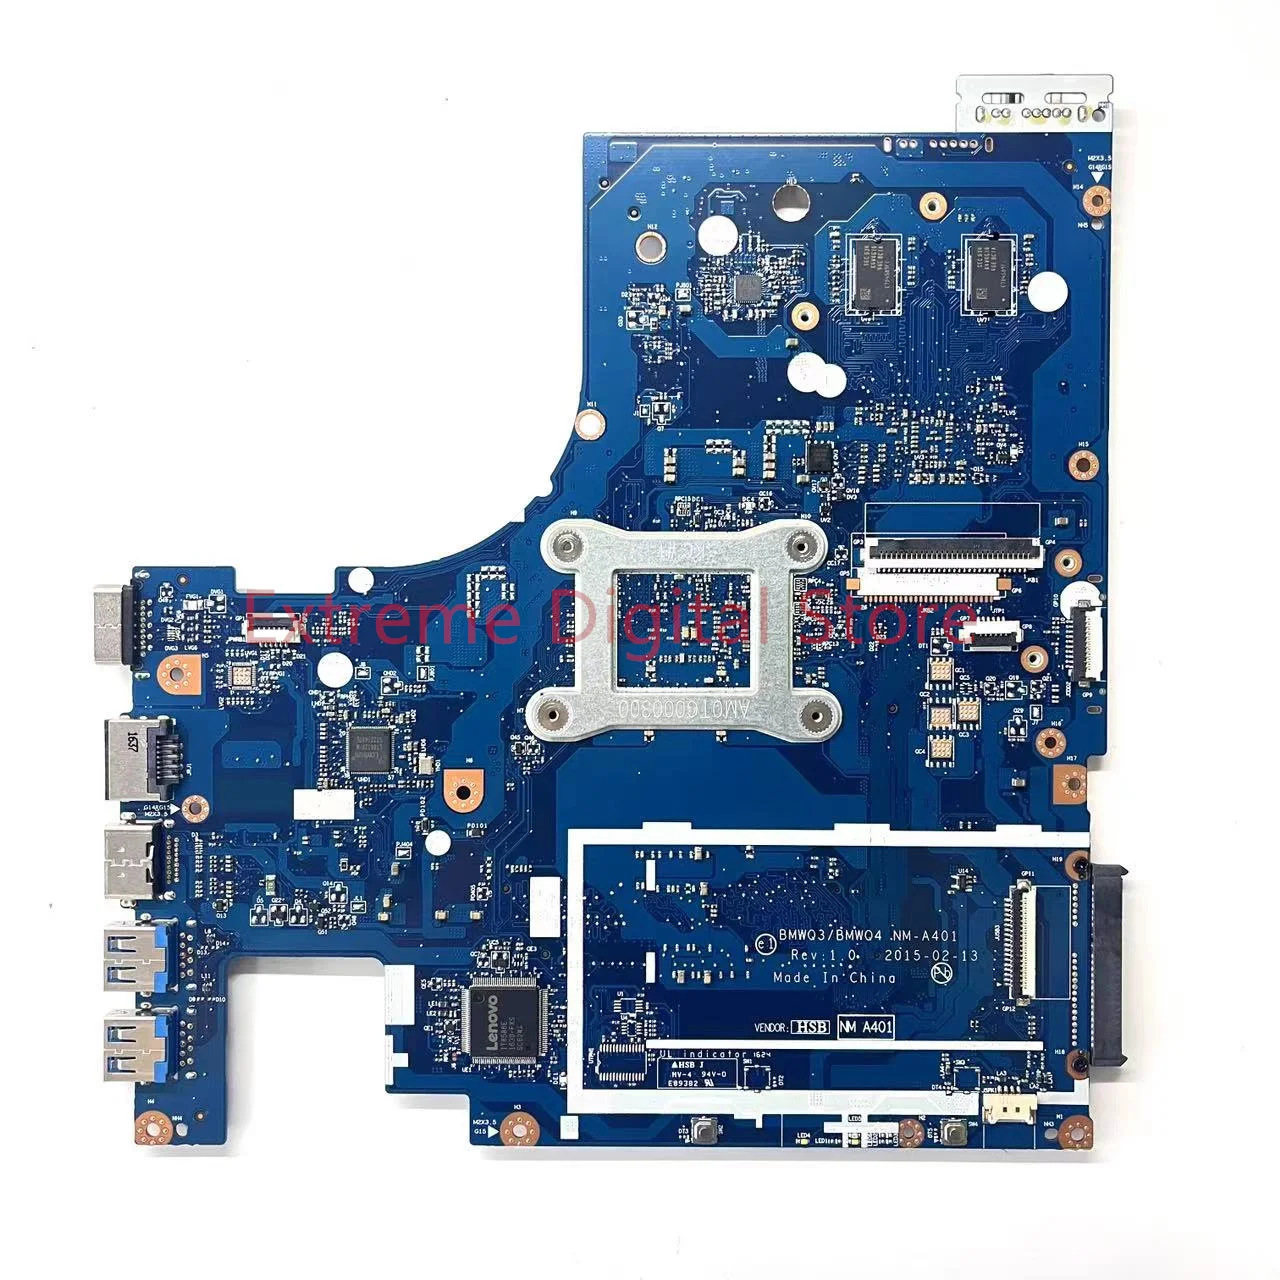 Lenovo Ideapad G51-35 nešiojamas plokštė NM-A401 su A6-7310 2G DDR3 100% Testuotas, Pilnai Darbo